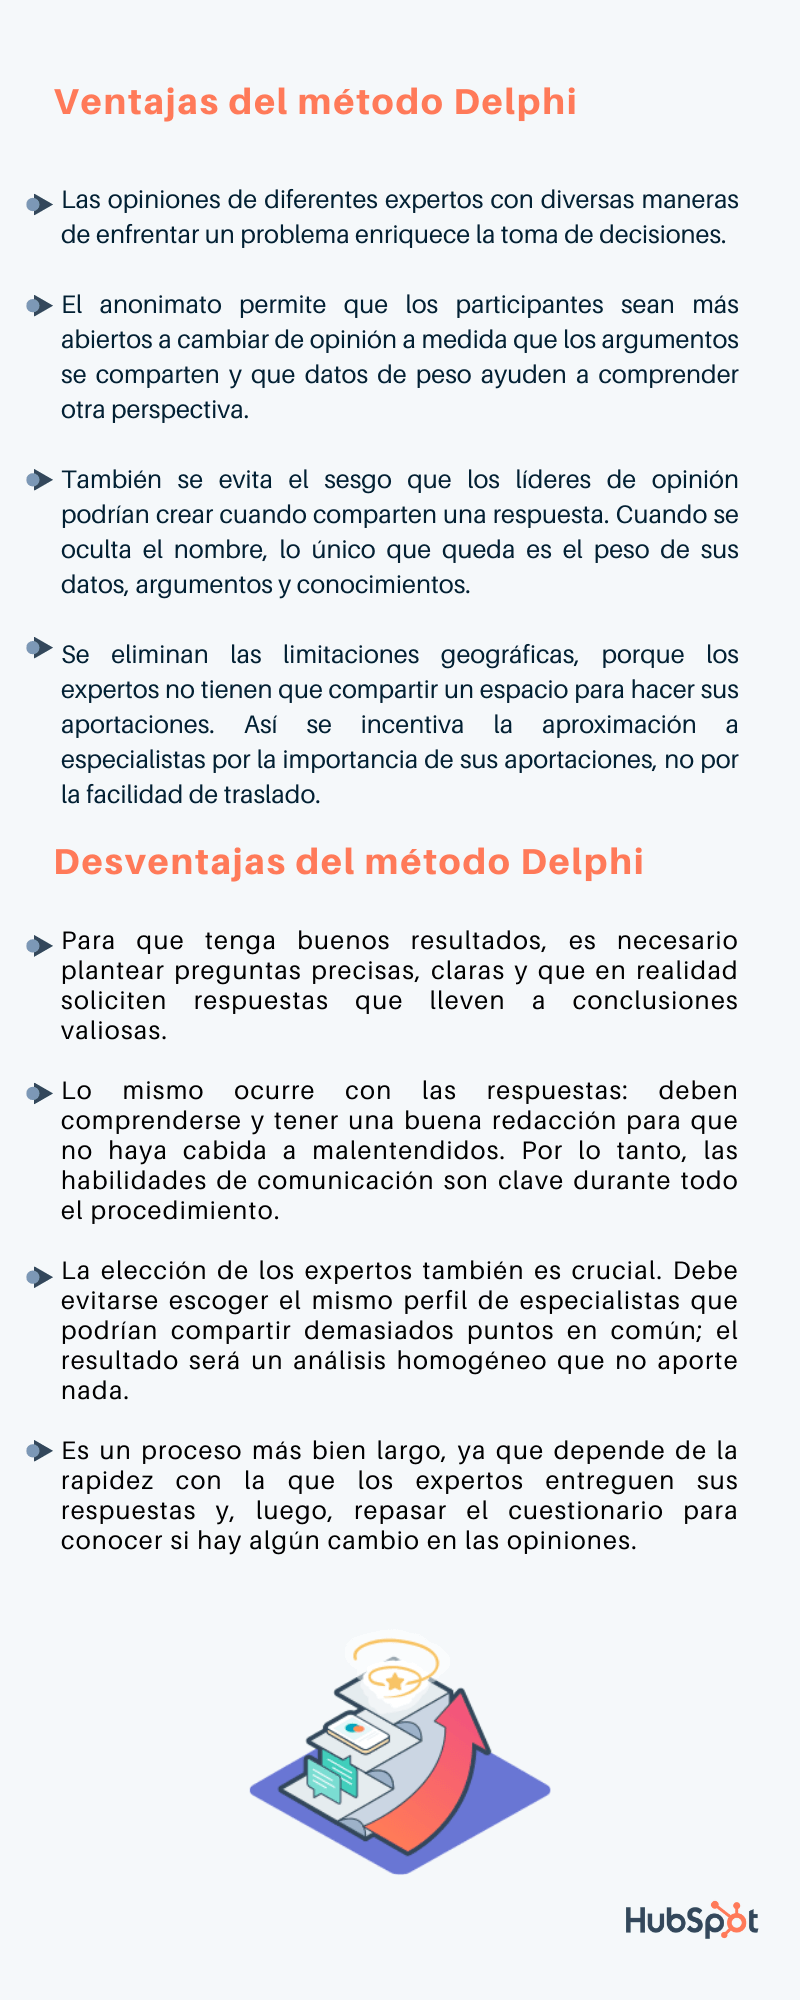 Ventajas y desventajas del método Delphi